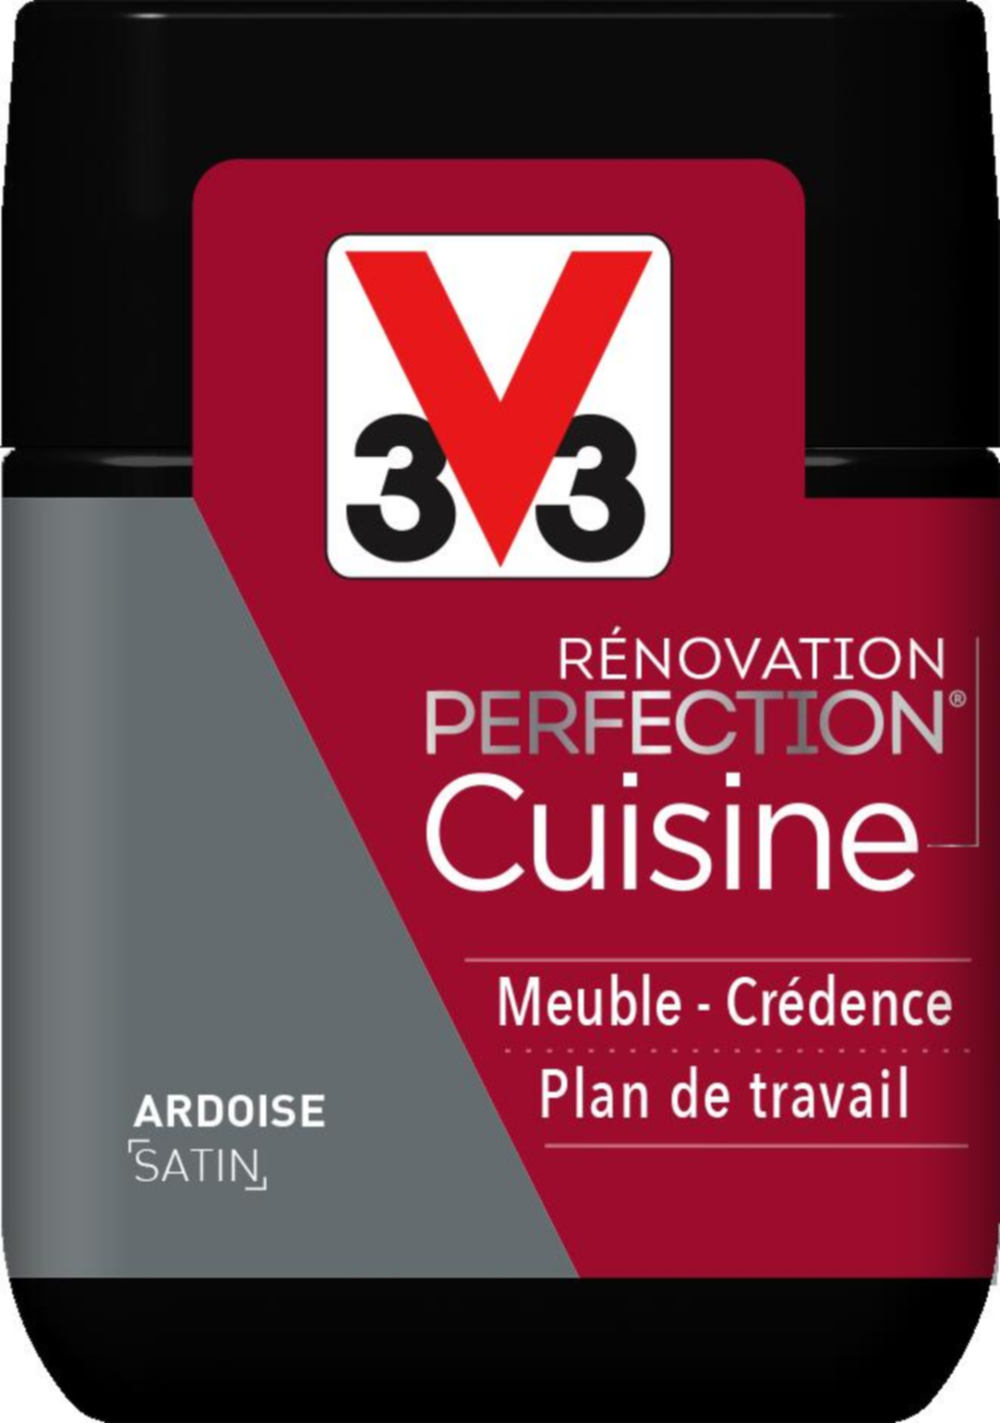 Testeur de peinture rénovation cuisine Perfection ardoise satin 75ml - V33